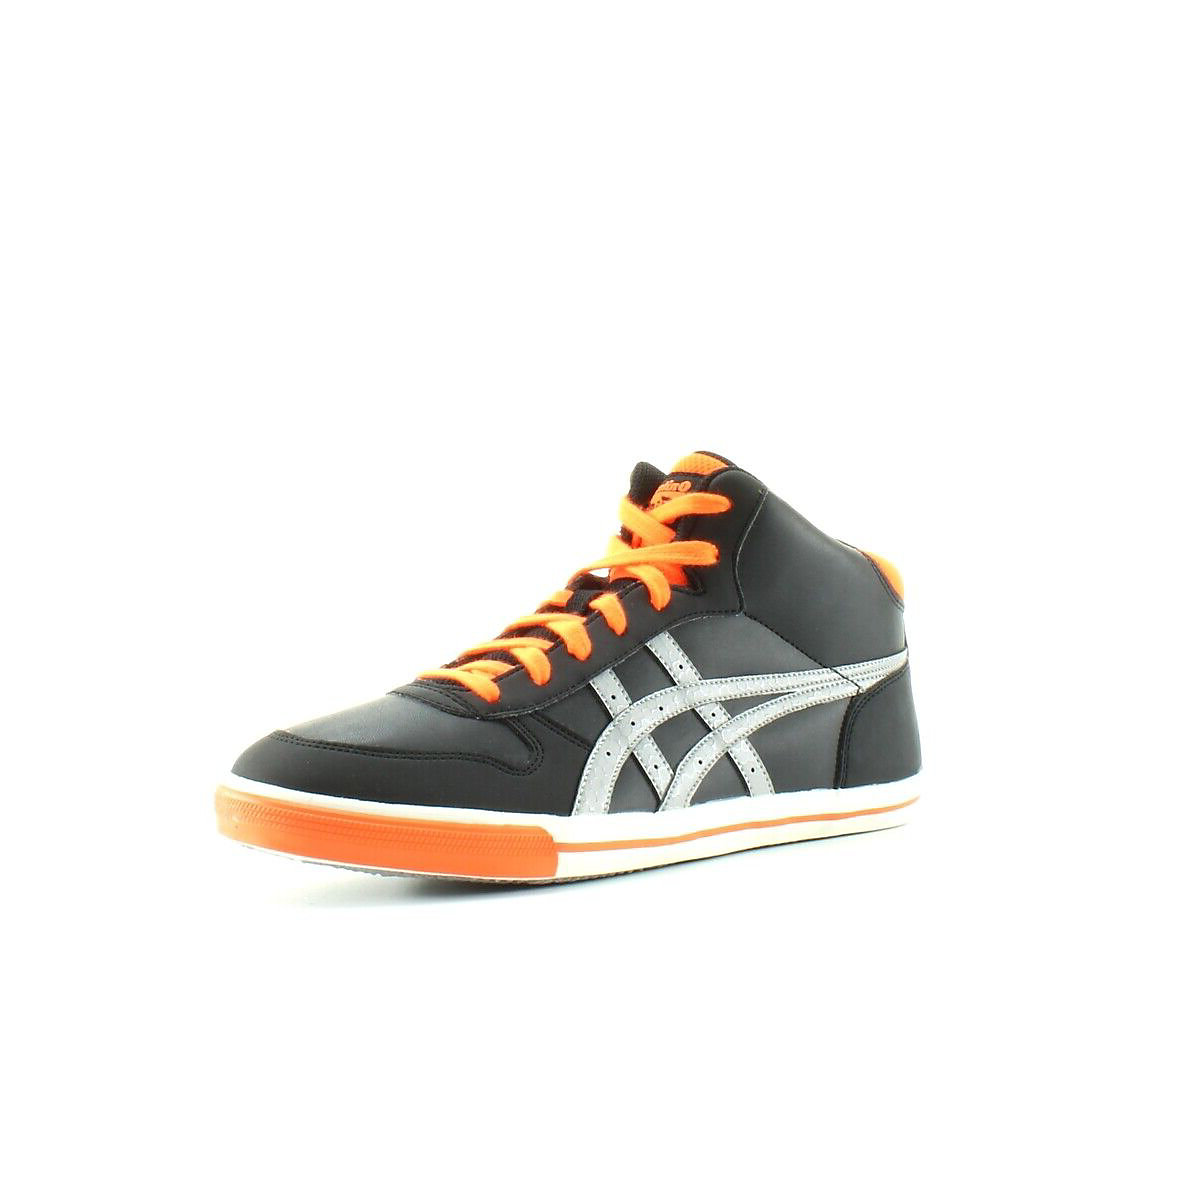 ASICS AARON MT GS Schwarz Orange Grau Kinder Sneakers Schuhe für Jungen schwarz